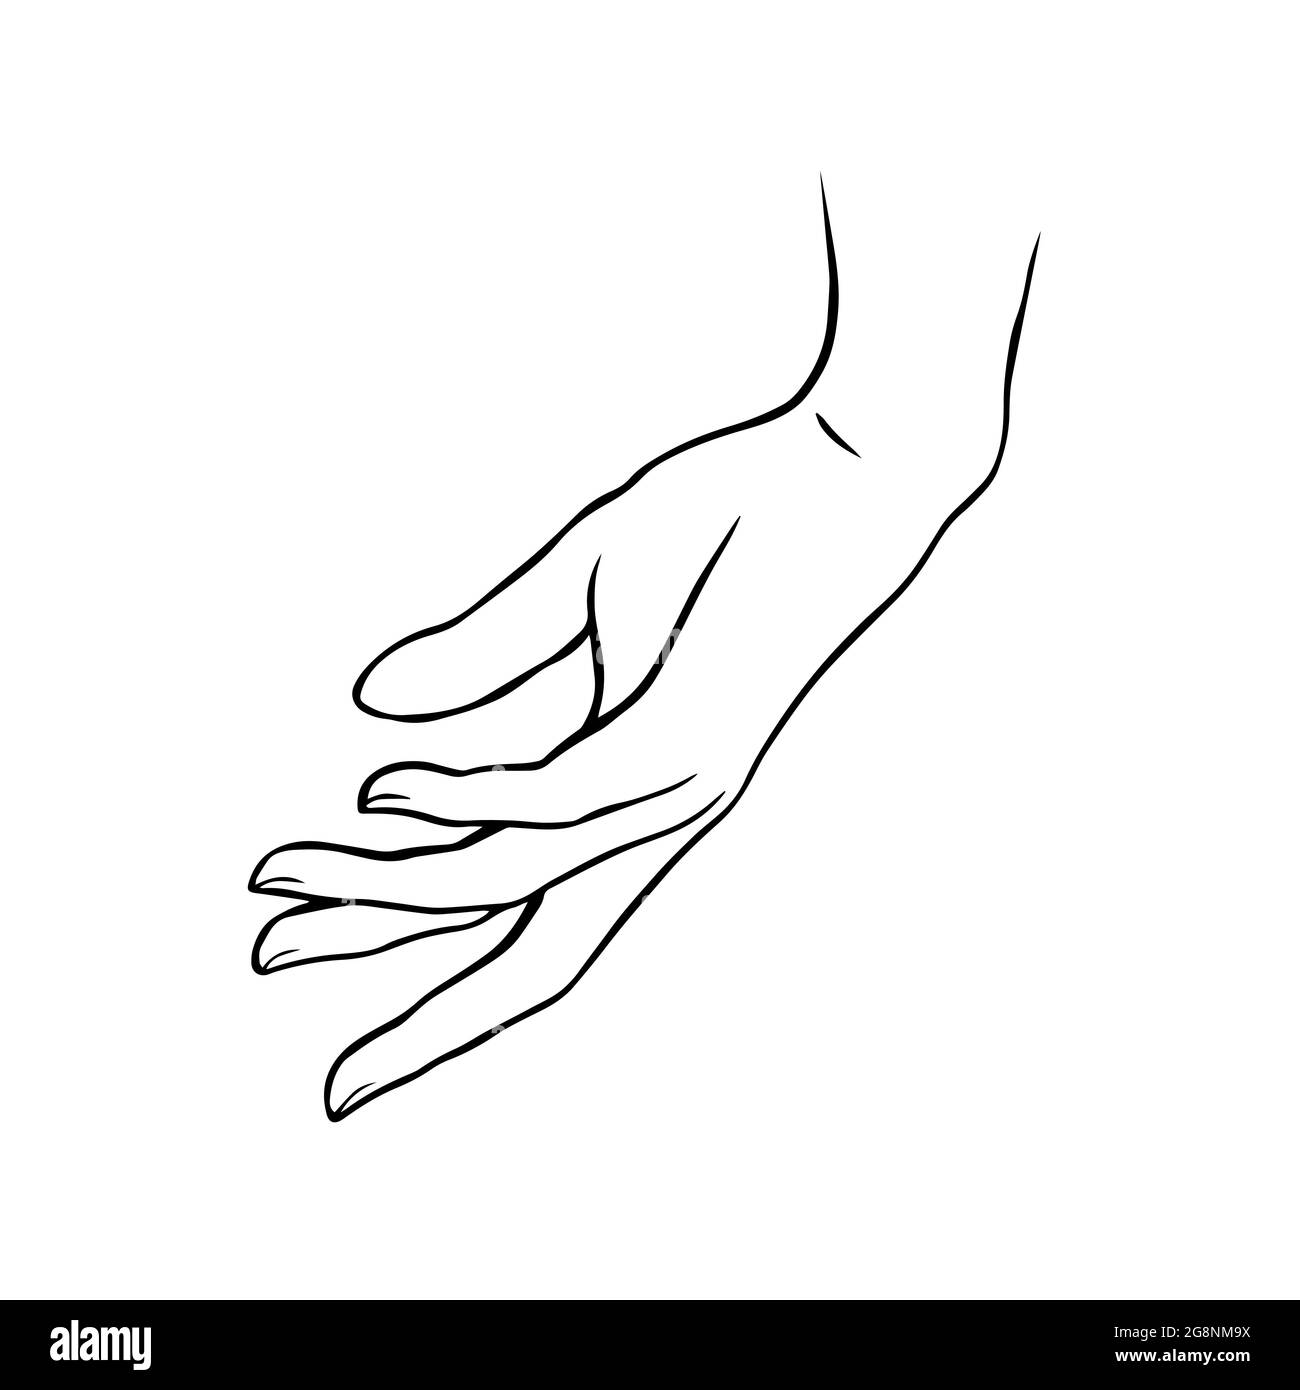 Pin on n̲̅a̲̅i̲̅l̲̅s̲̅ | Nail drawing, Printable nail art, Hand outline